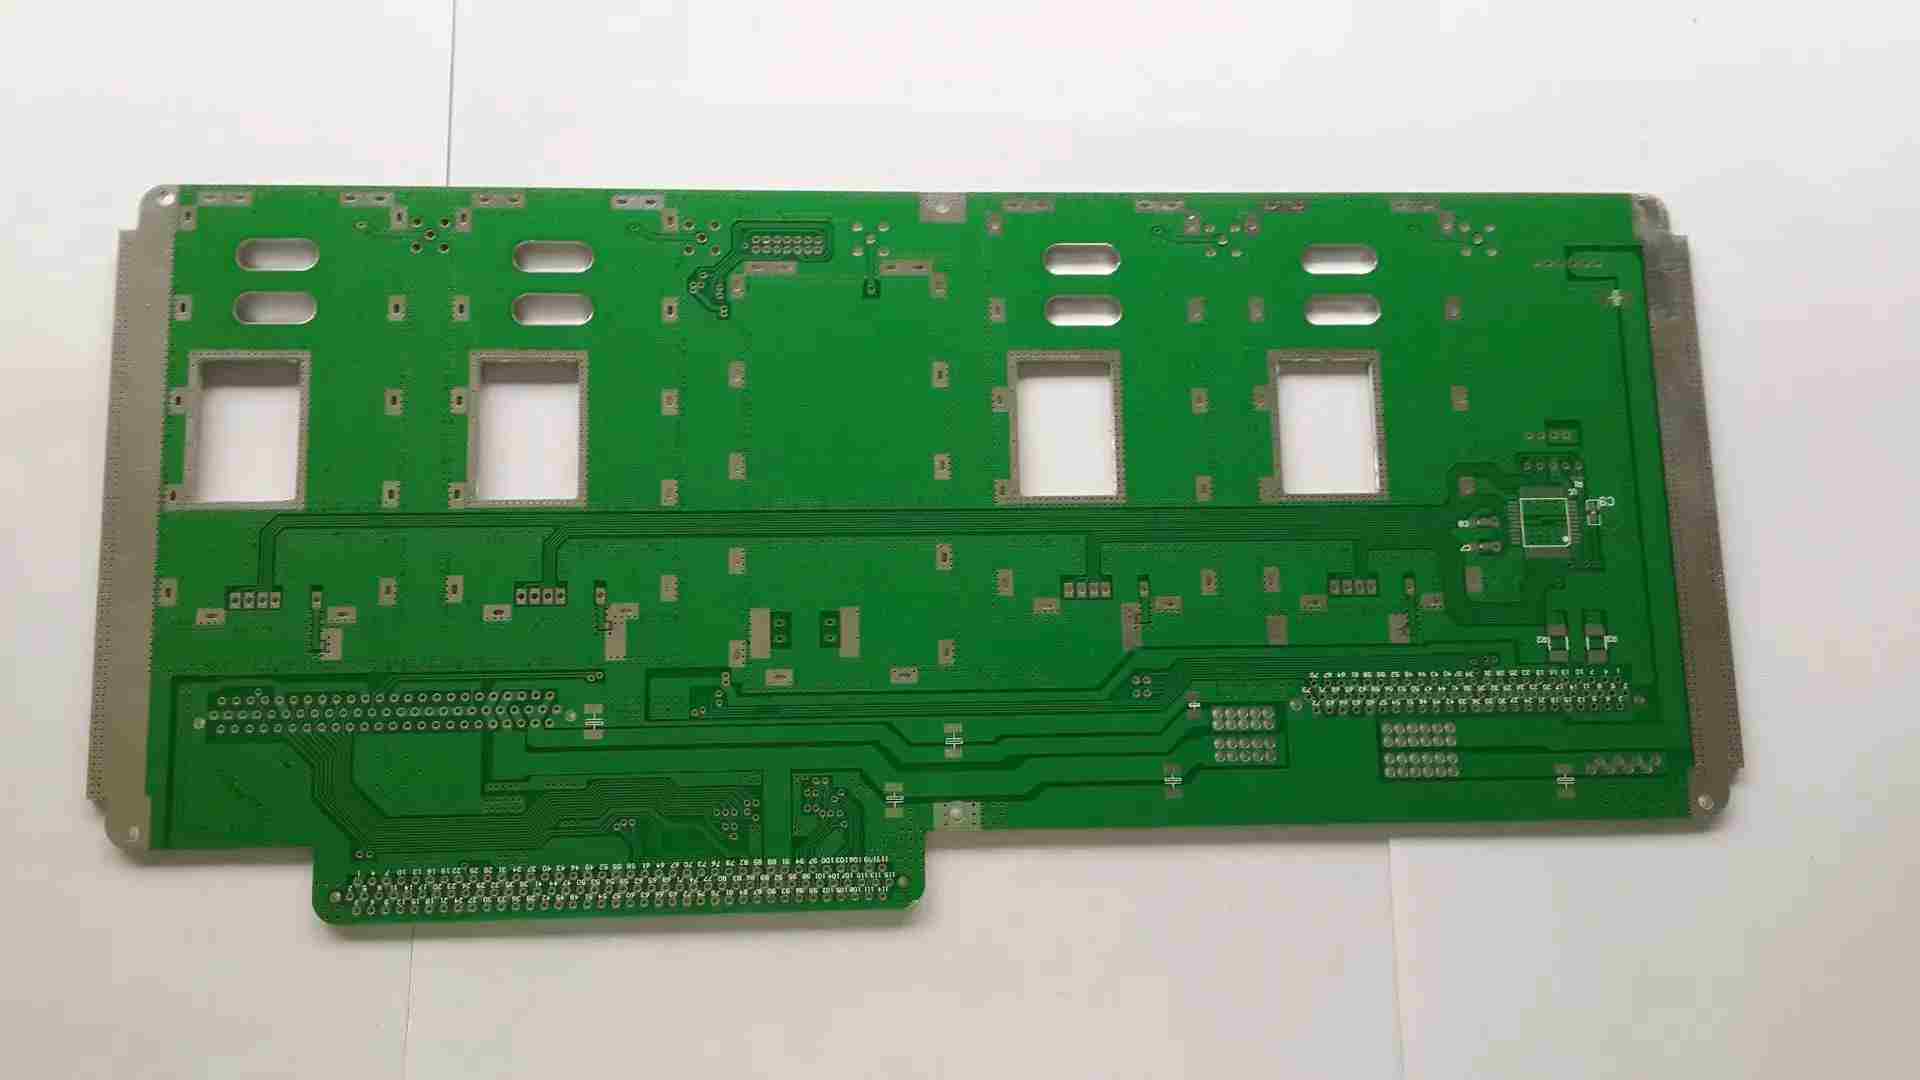 PCB boards